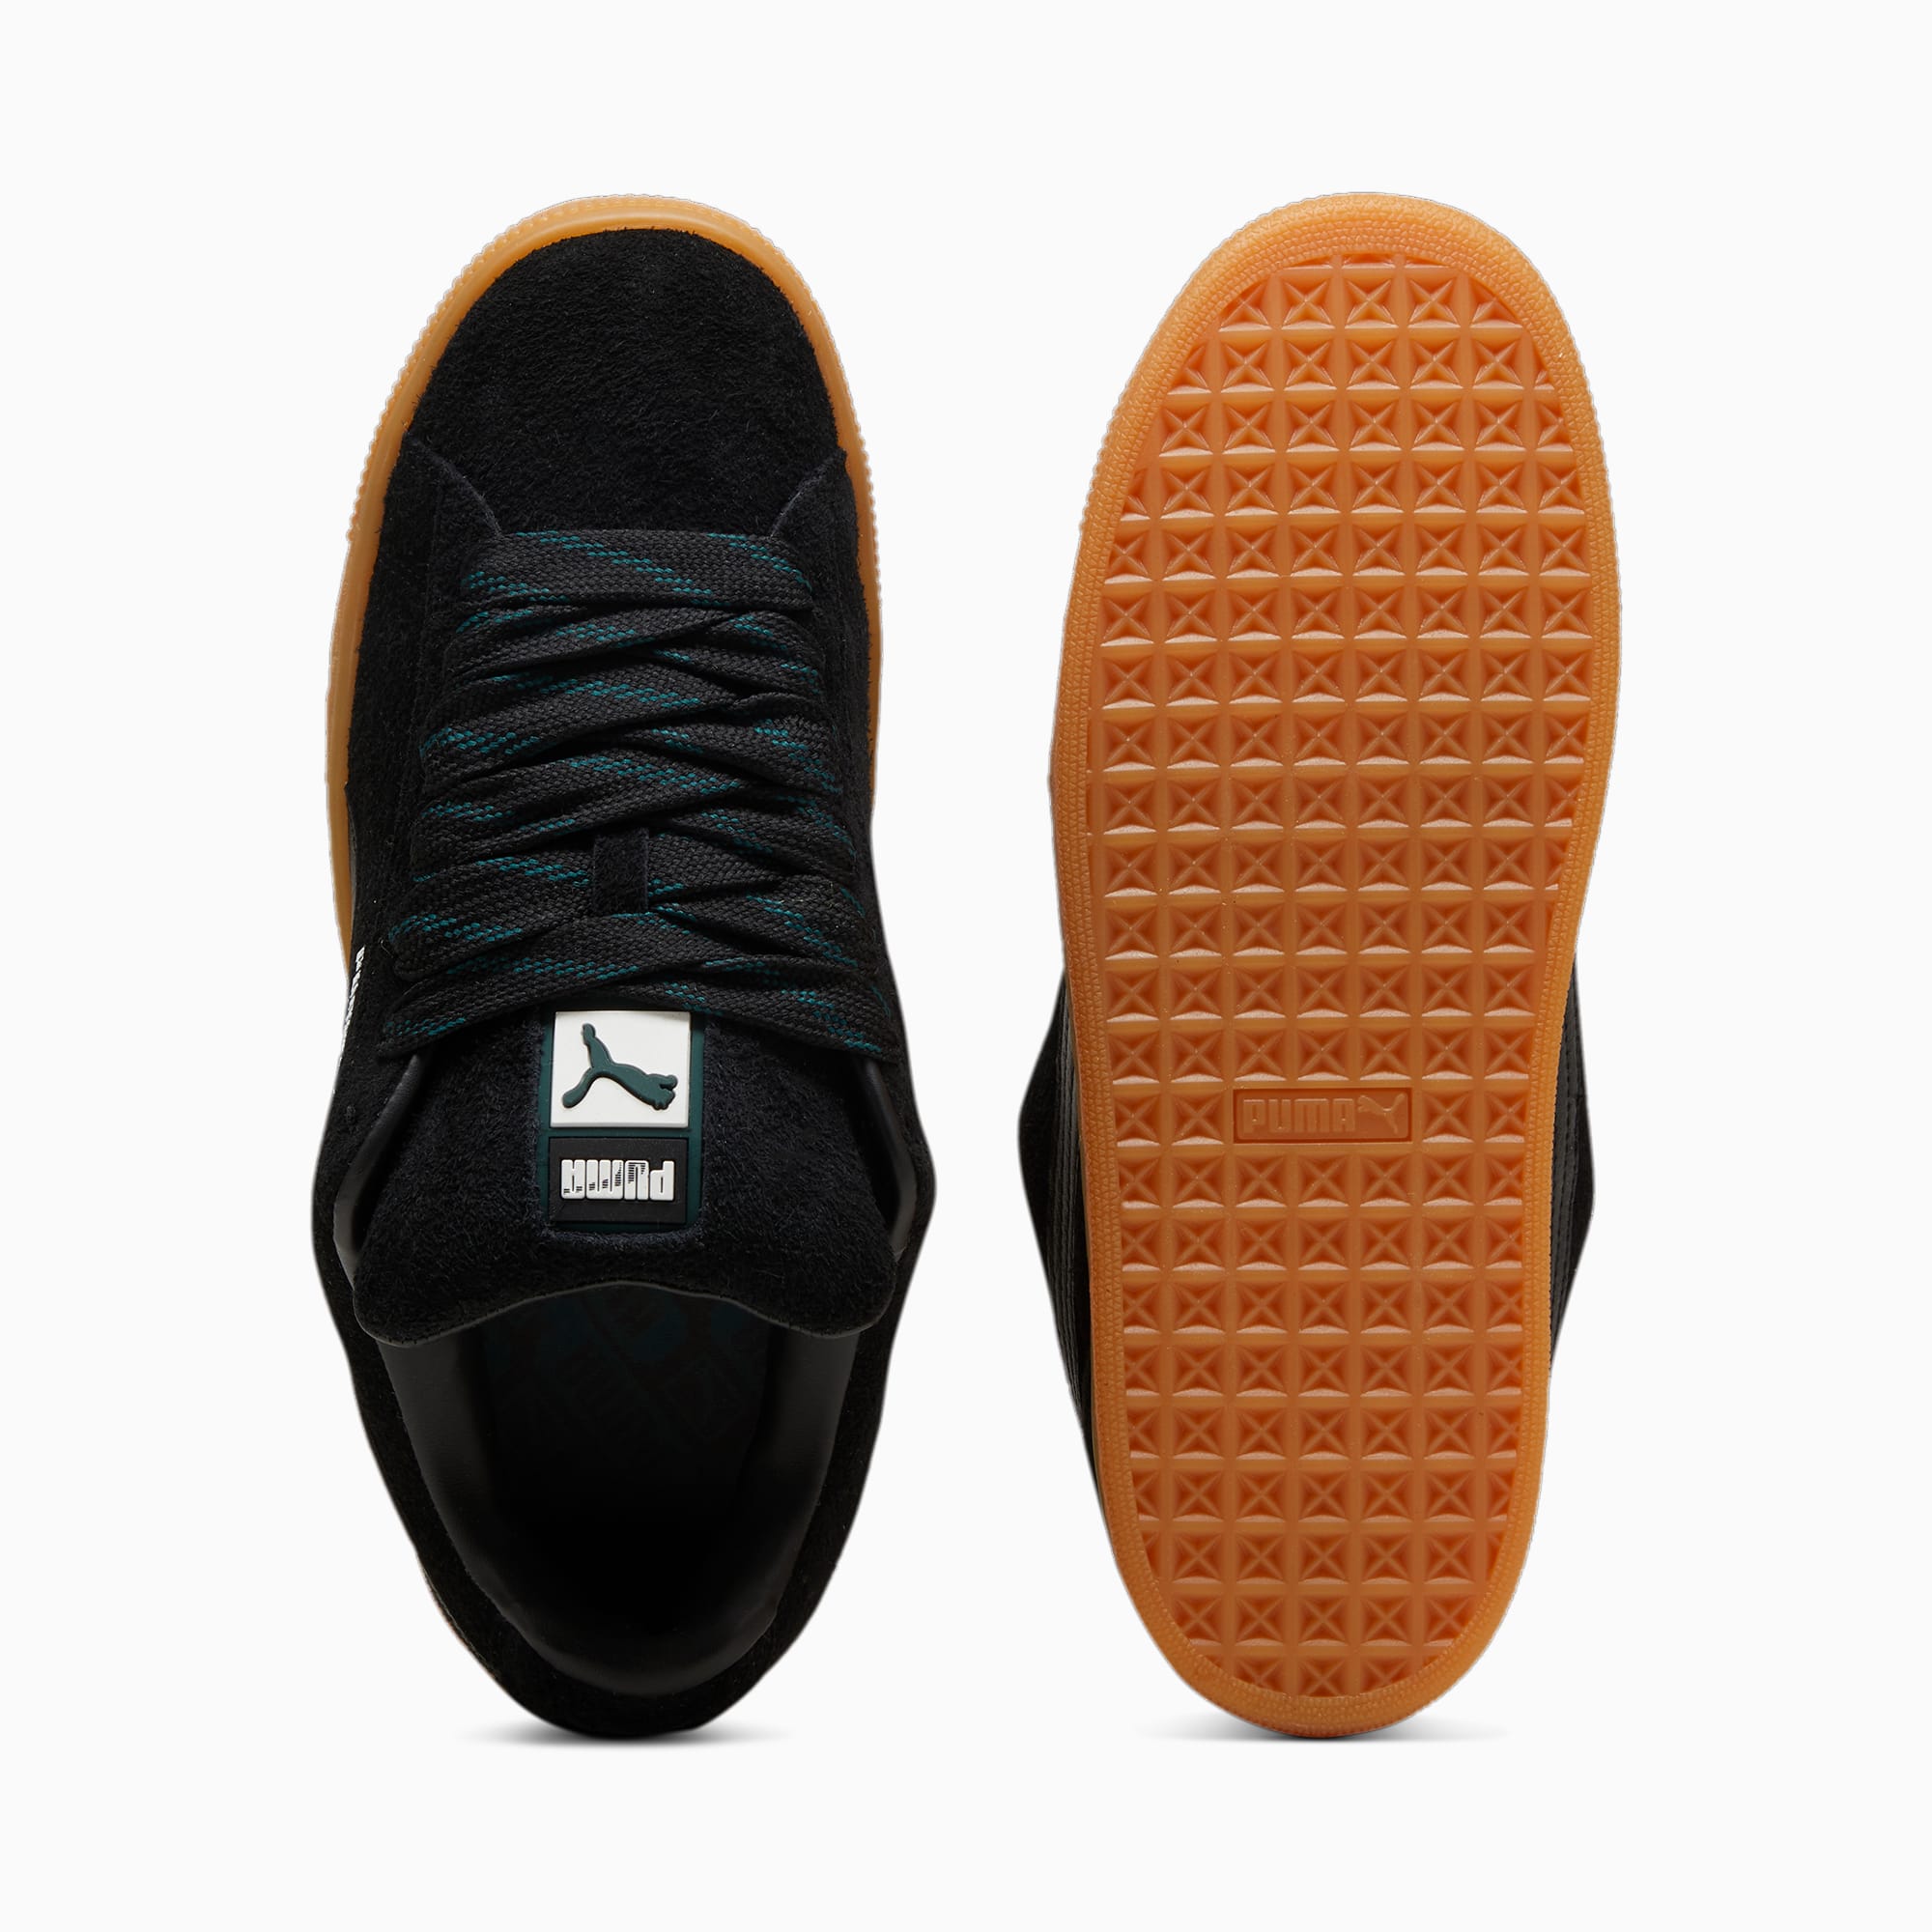 PUMA Suede XL Flecked Sneakers Unisex Schuhe, Schwarz/Grün, Größe: 48, Schuhe